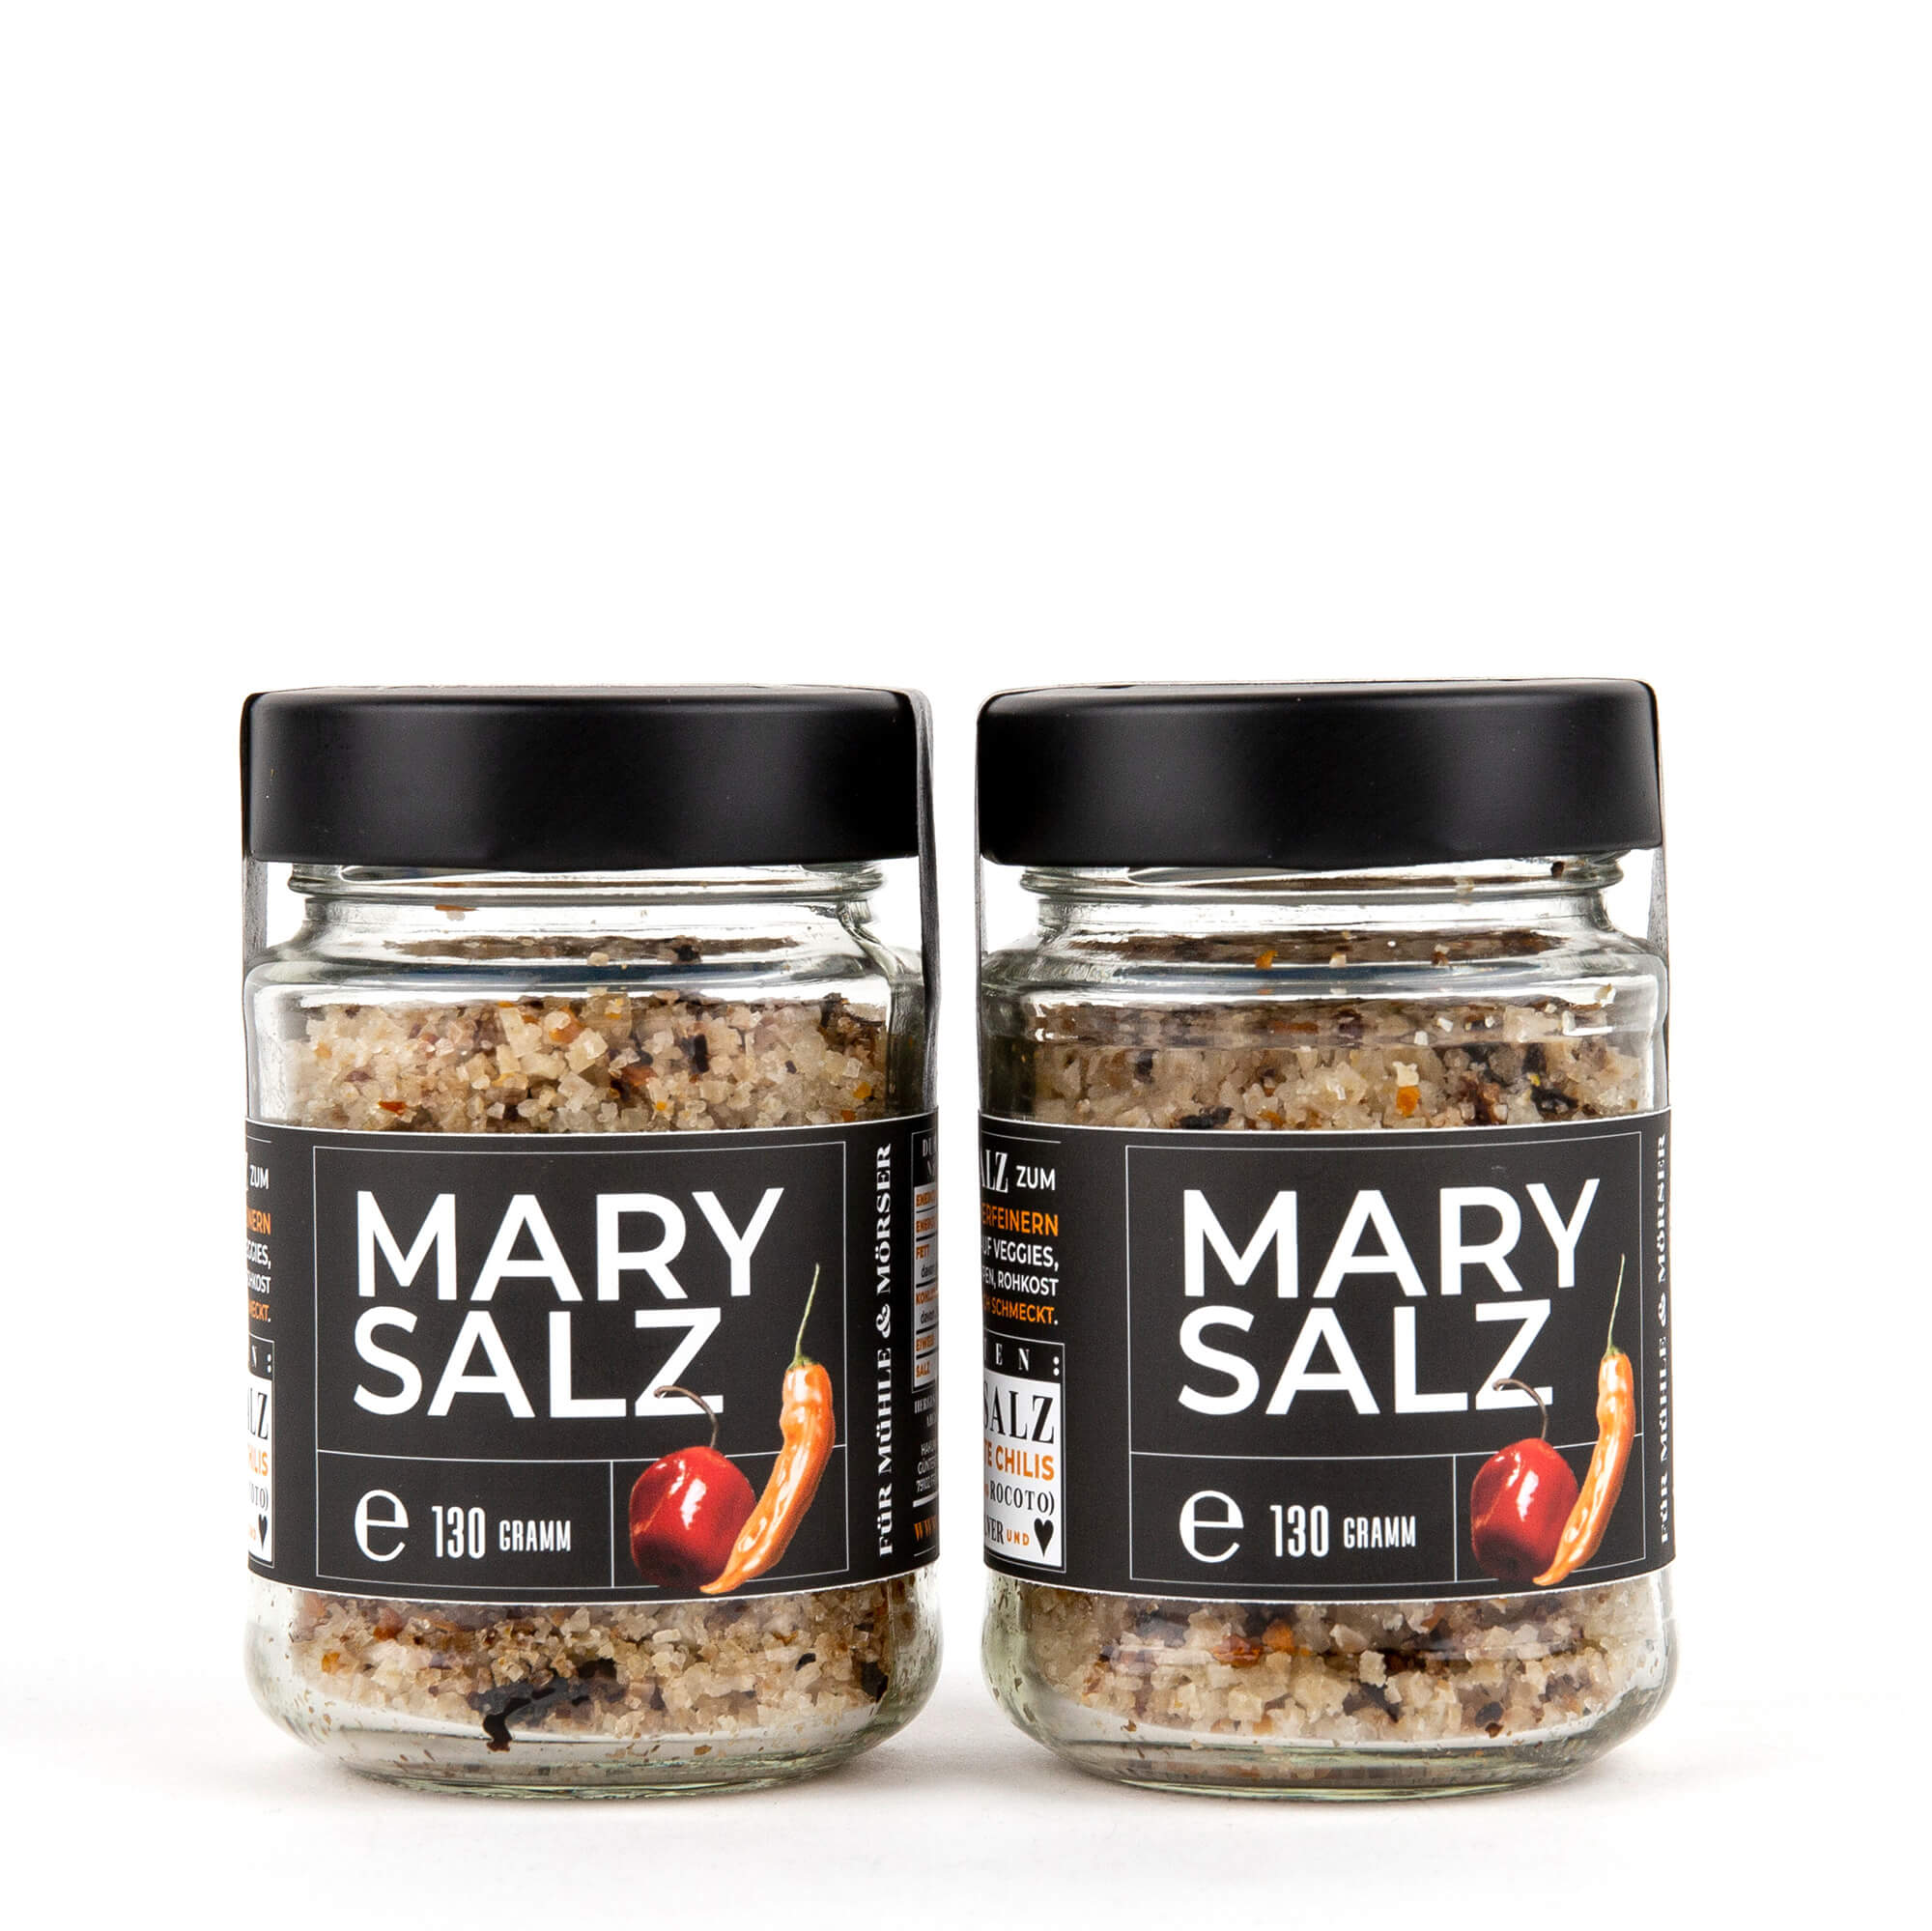 Salz-Bundle: 2 x MARY SALZ